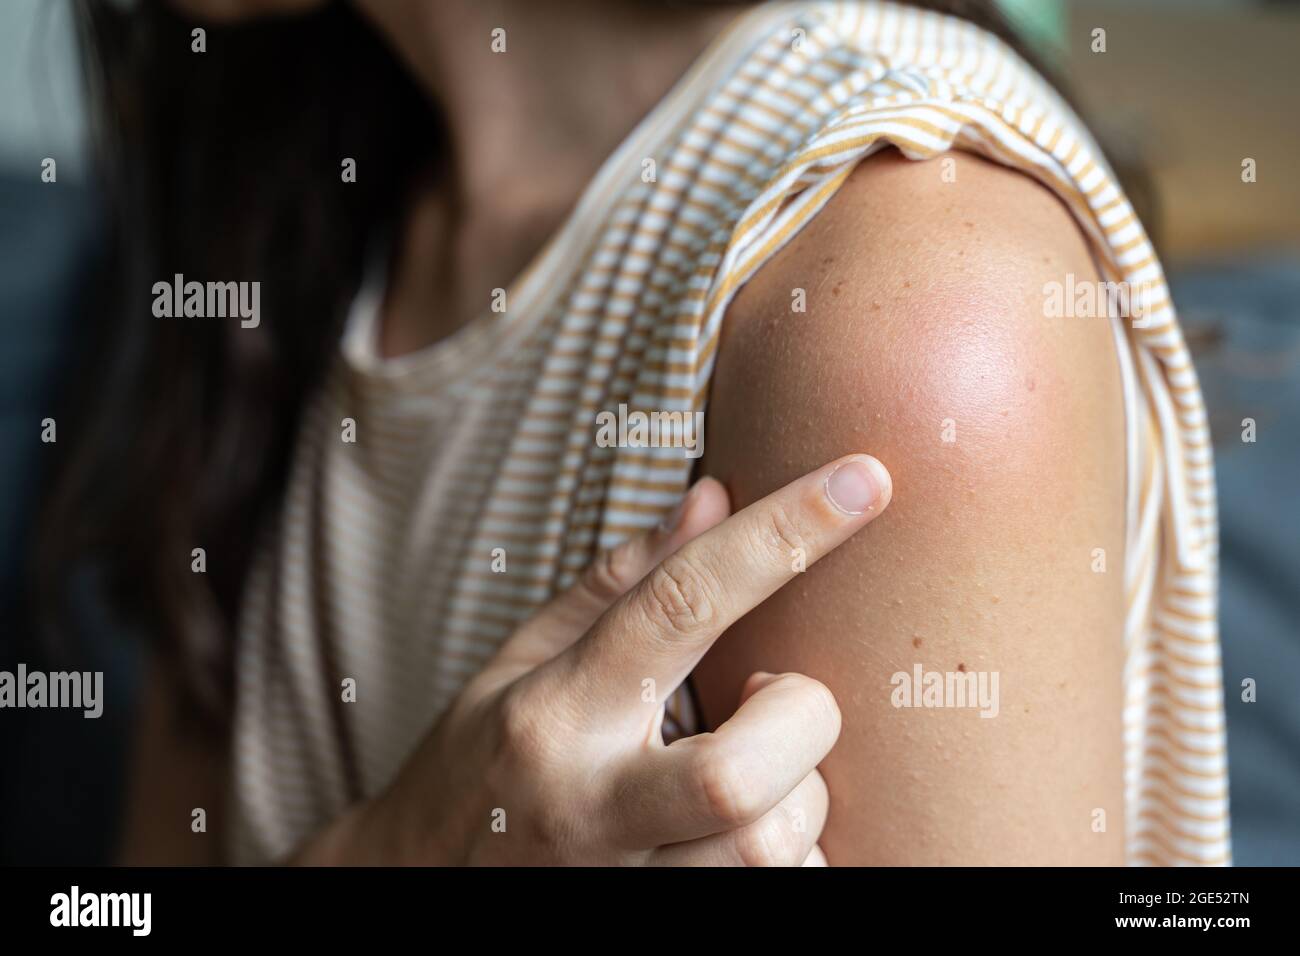 Effet secondaire du vaccin - rougeur et douleur de la peau de l'épaule. Réaction de vaccination Covid-19. La peau de la femme démange et gonfle après la vaccination Banque D'Images